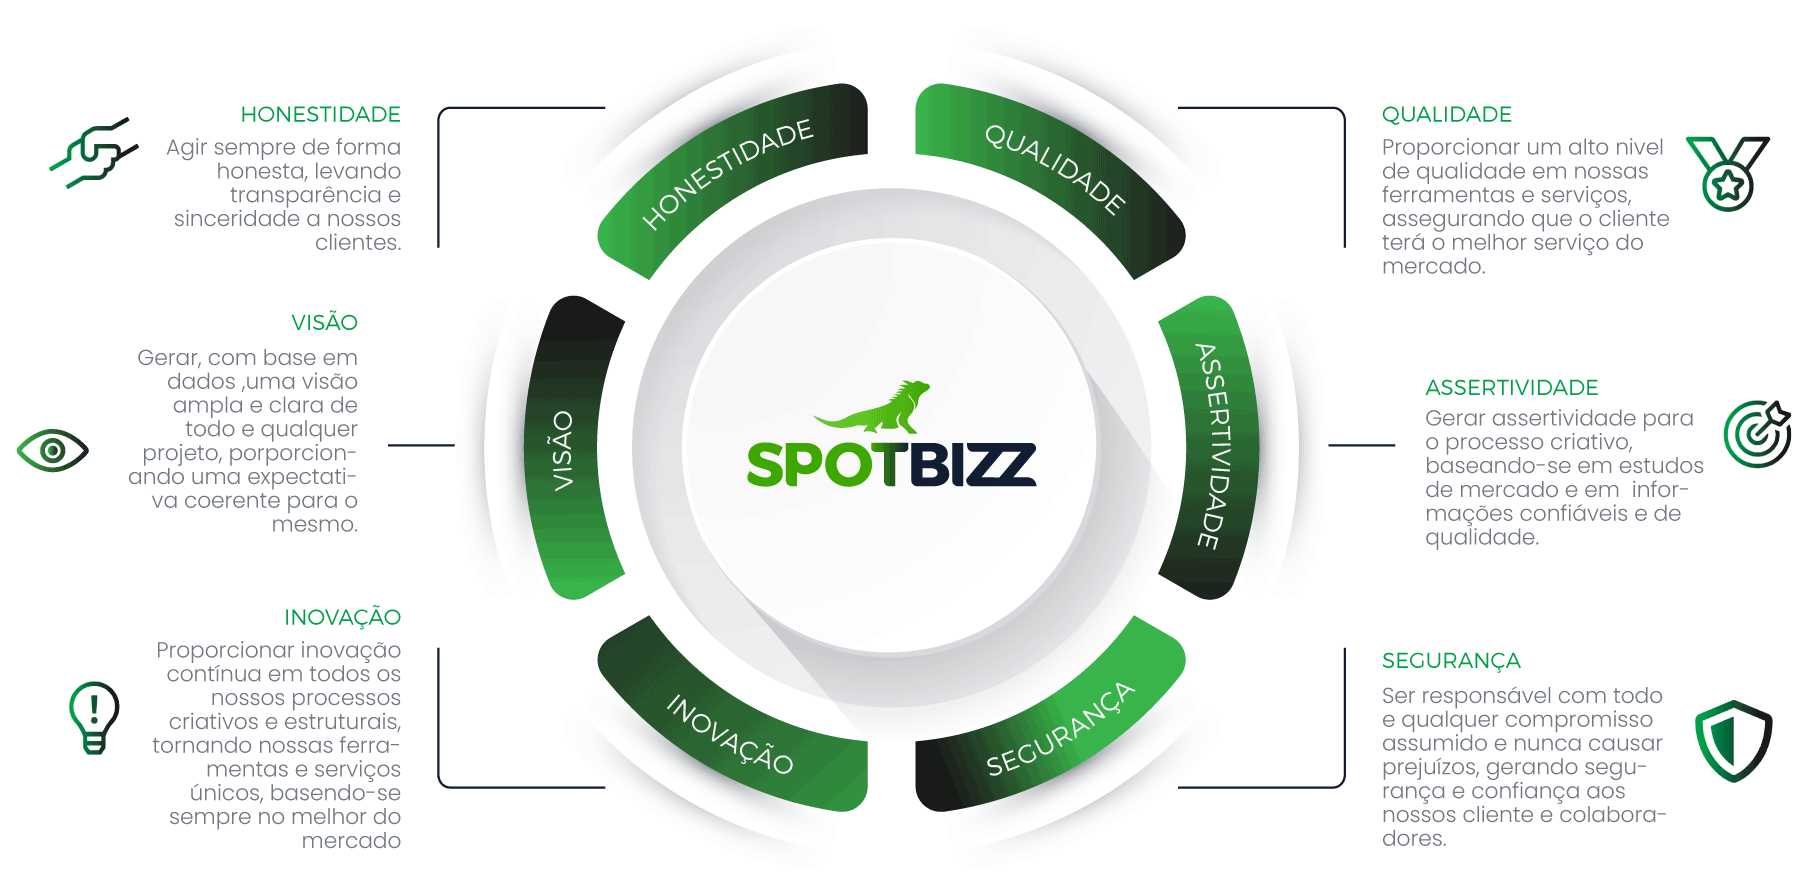 Logo Spotbizz